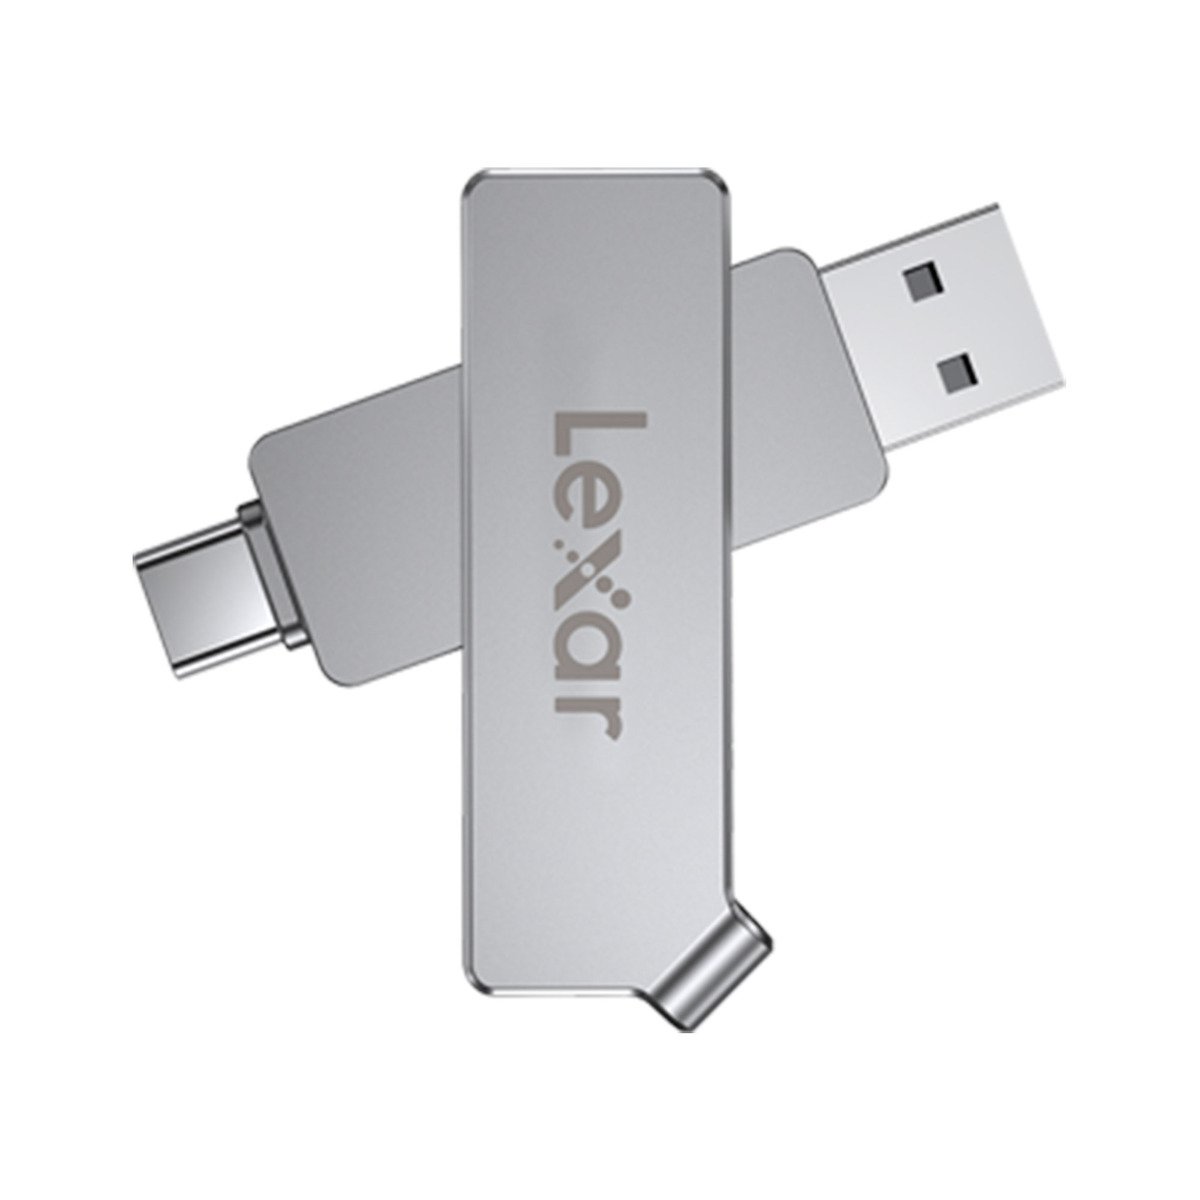 Lexar Type-C Dual USB Flash Drive LJDD30C 32GB